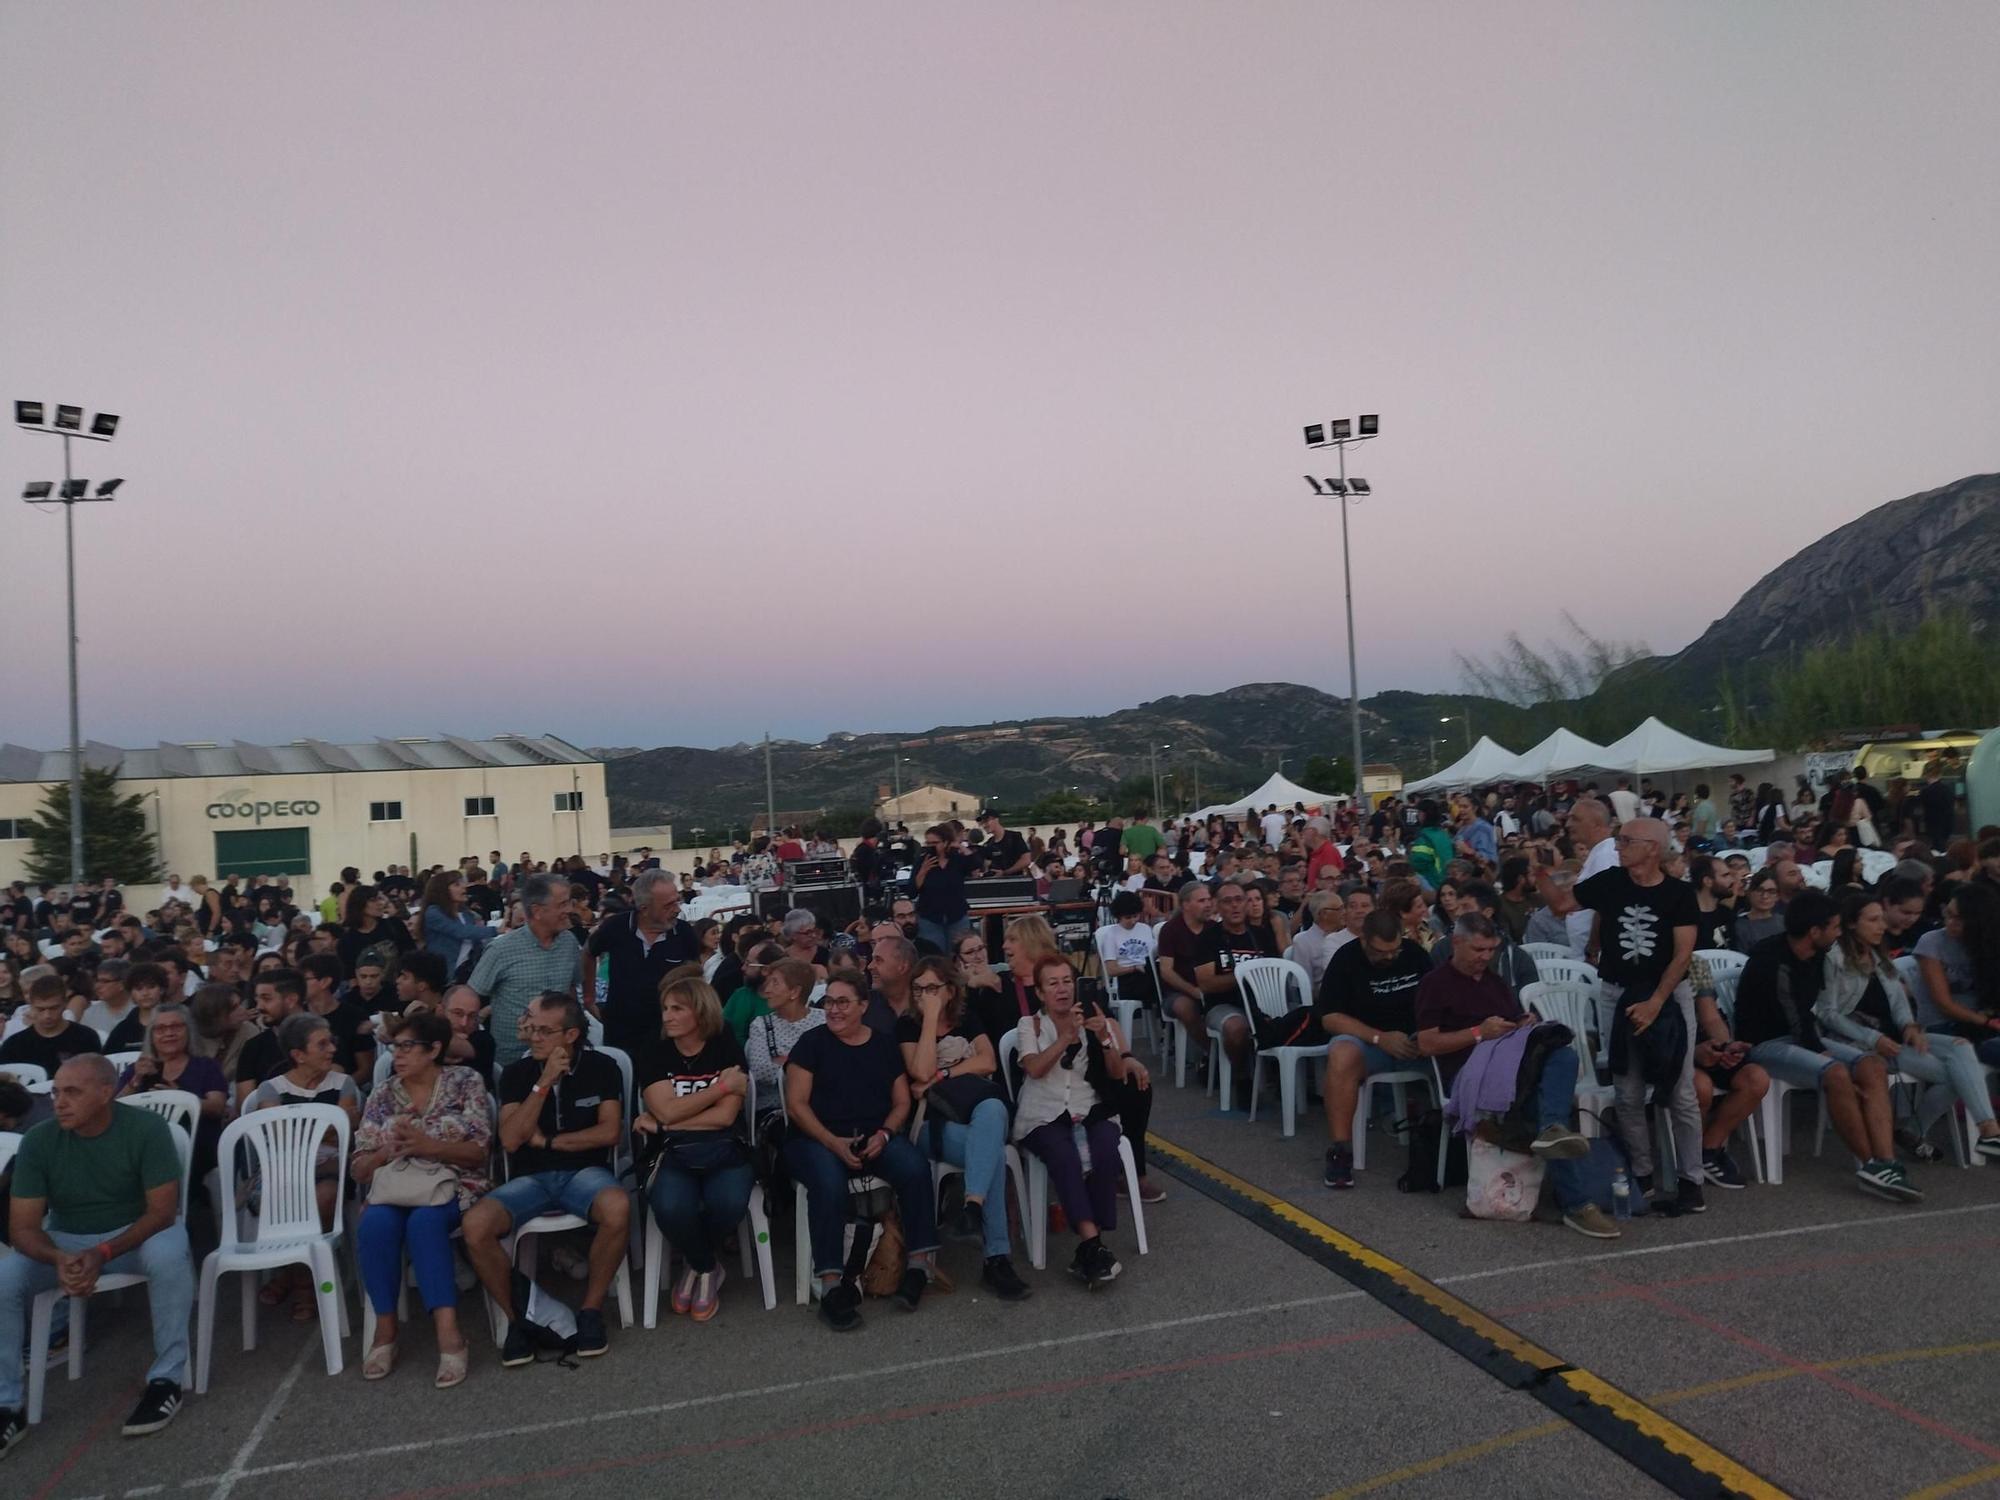 Más de 4.000 abrazos de solidaridad a los 14 jóvenes antifascistas de Pego encausados